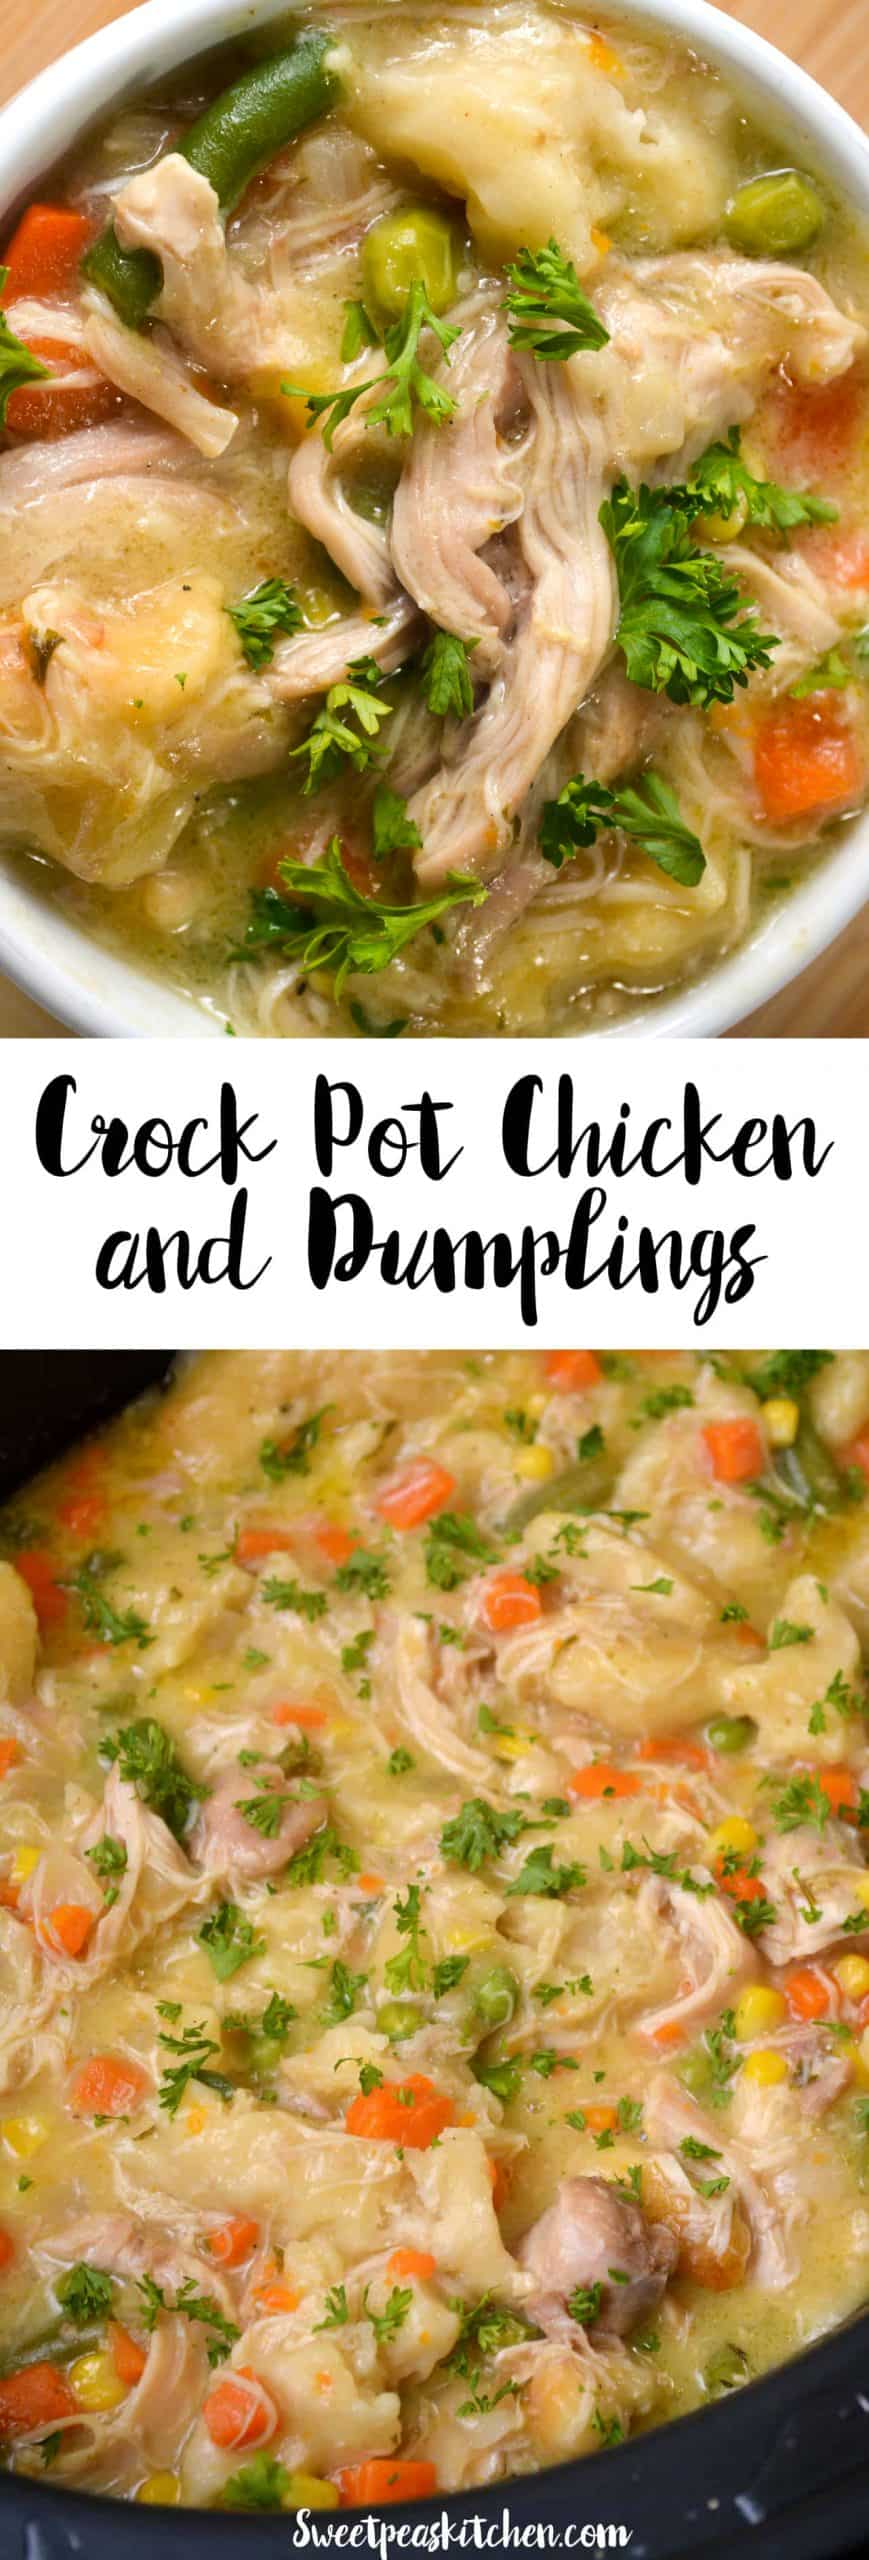 Crockpot Chicken And Dumplings